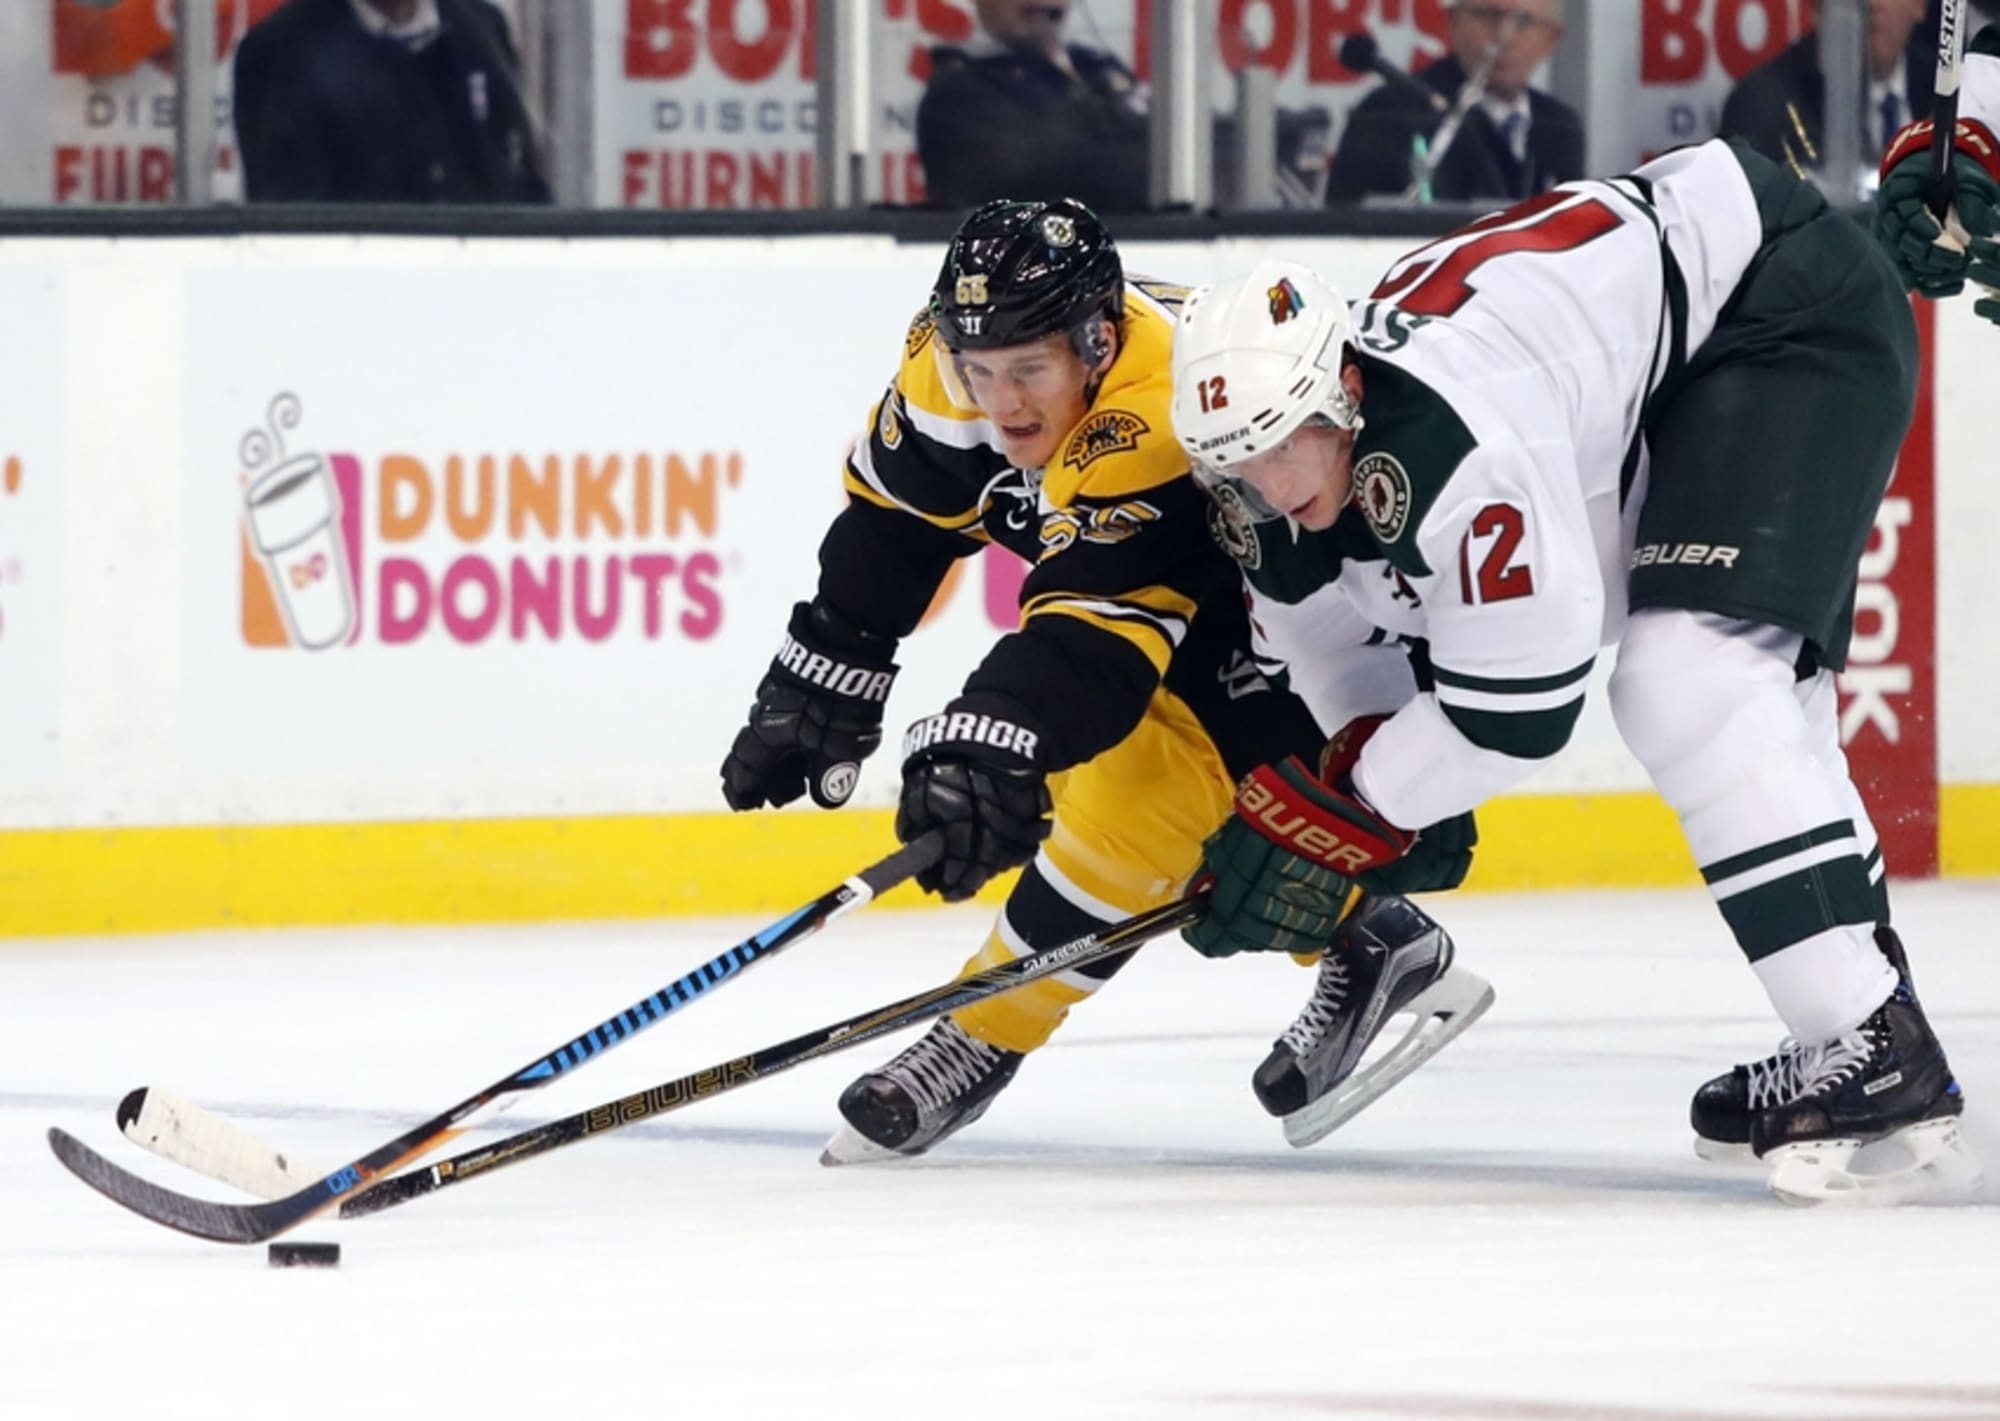 Boston Bruins To Host Military Appreciation Night Nov. 10 At TD Garden 